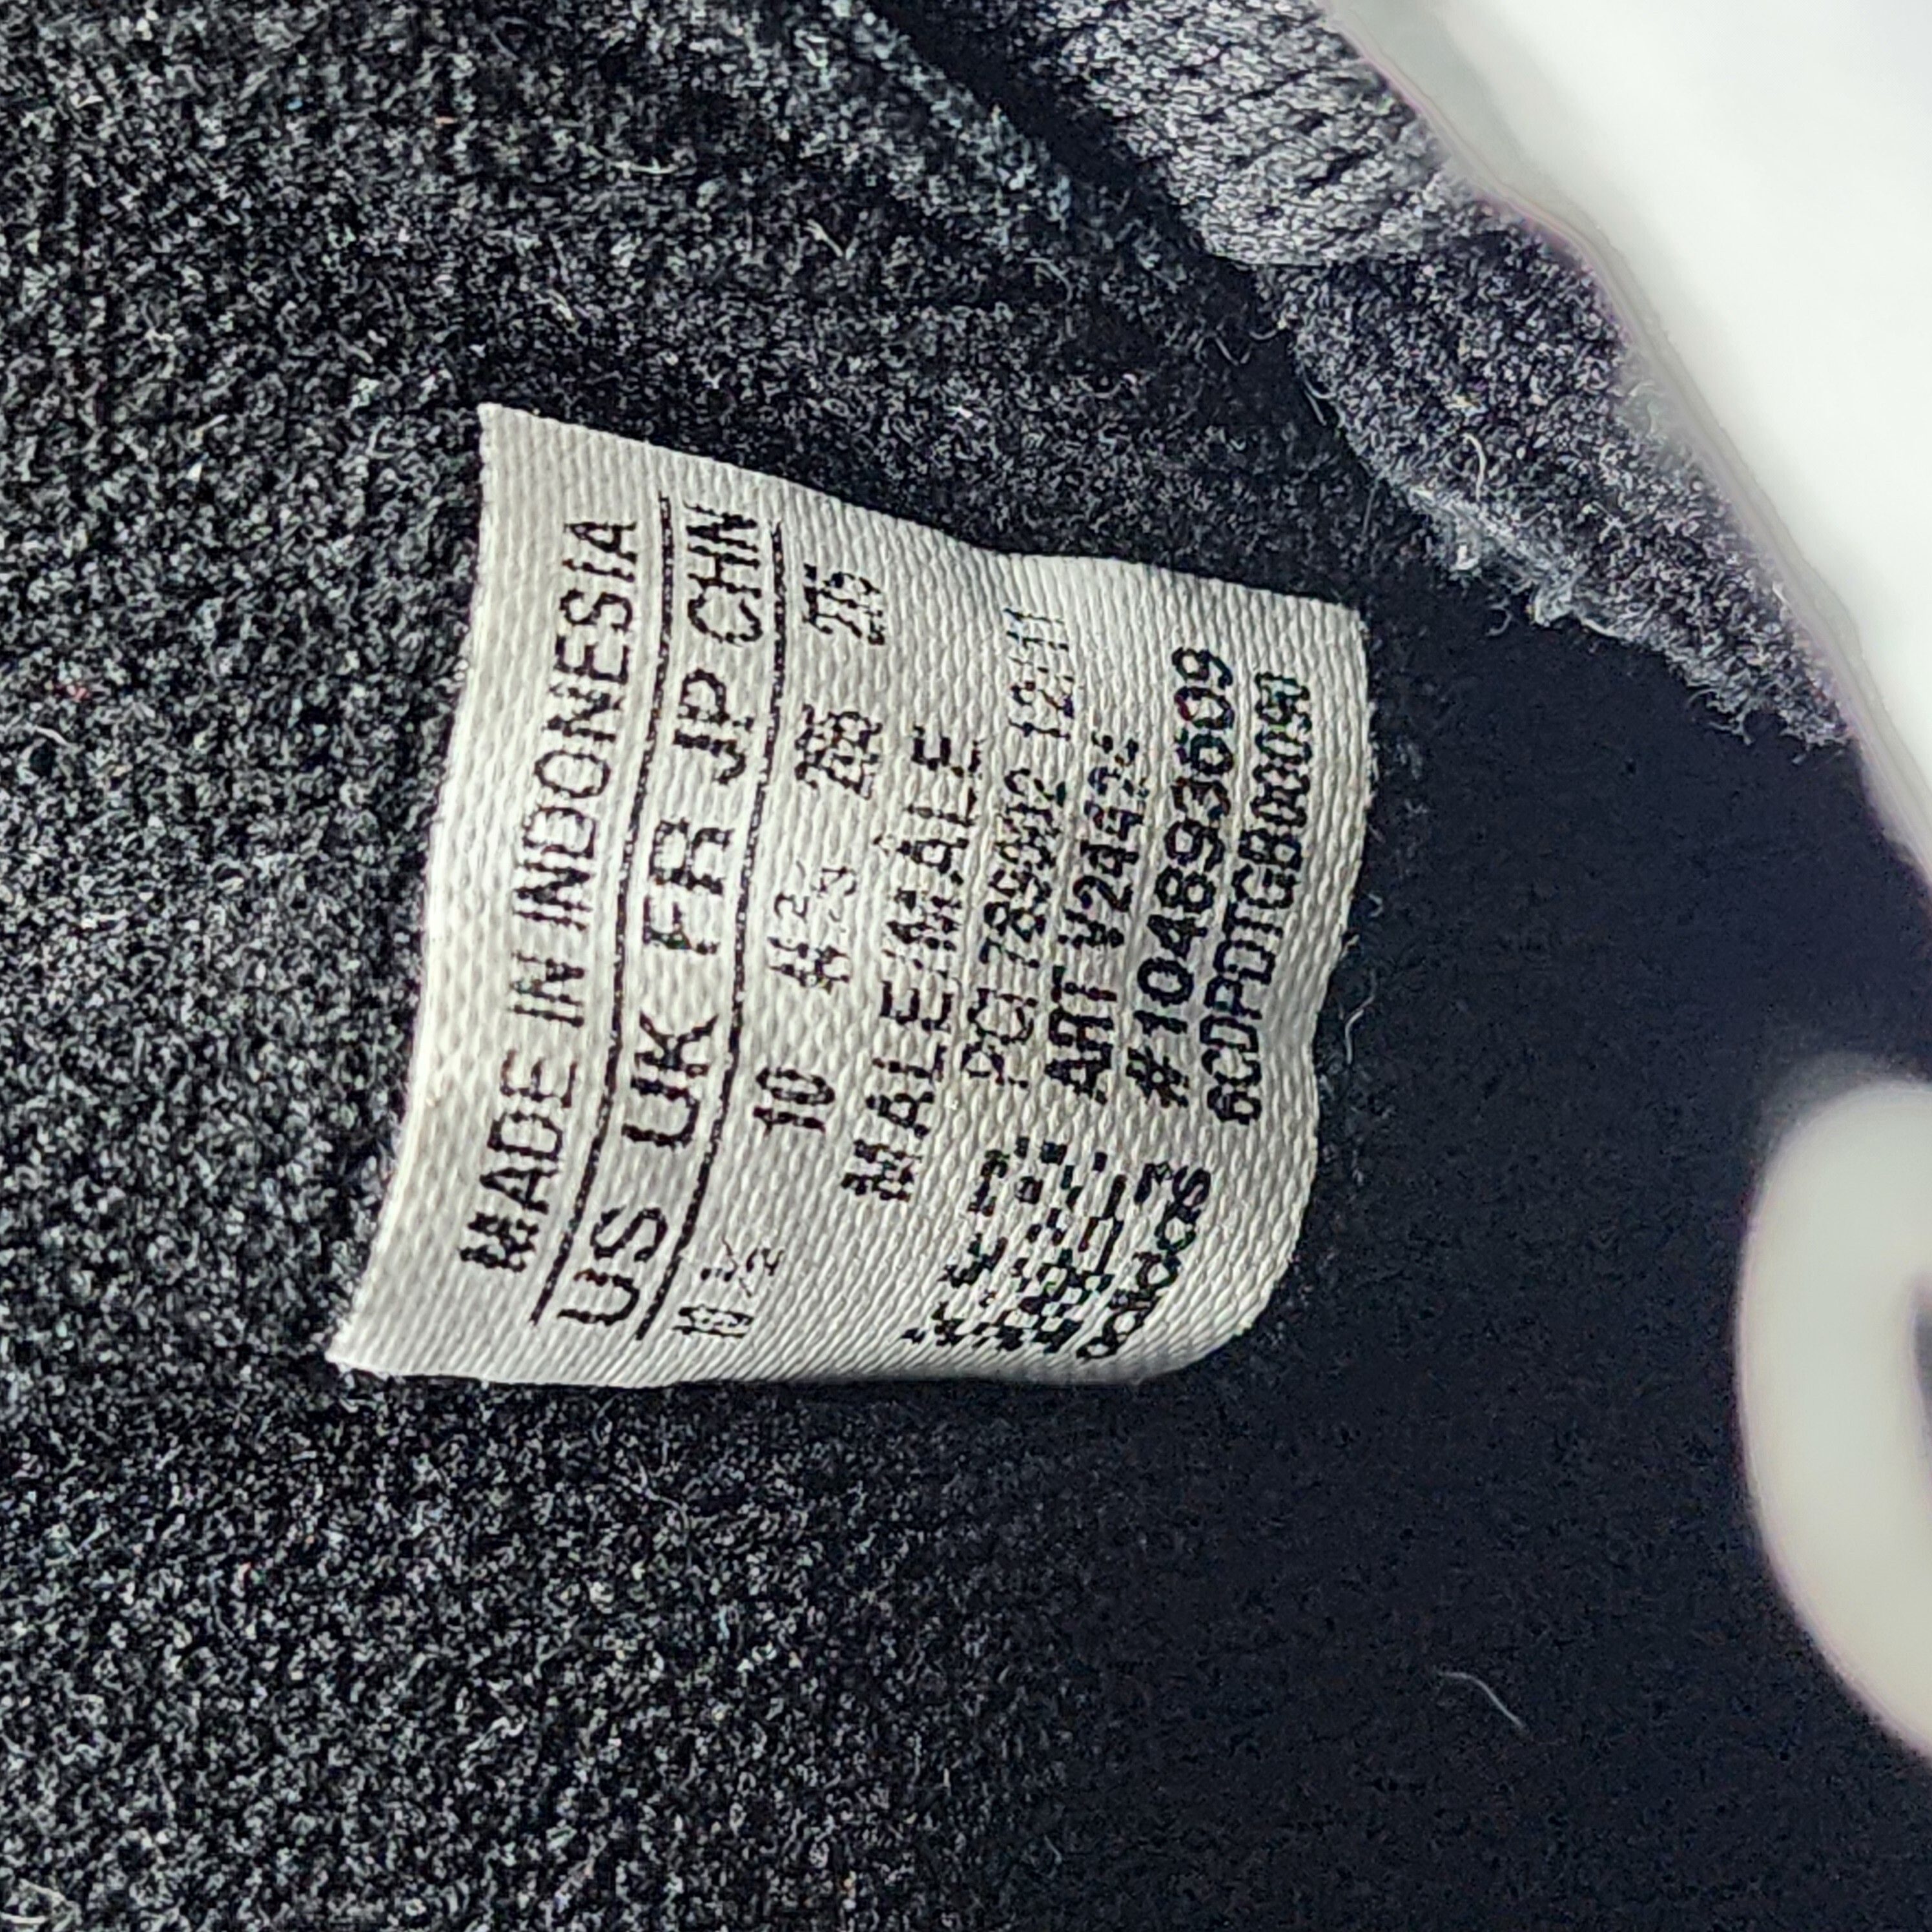 Adidas x Jeremy Scott - Gorilla Sneakers "2 Chainz" - 10